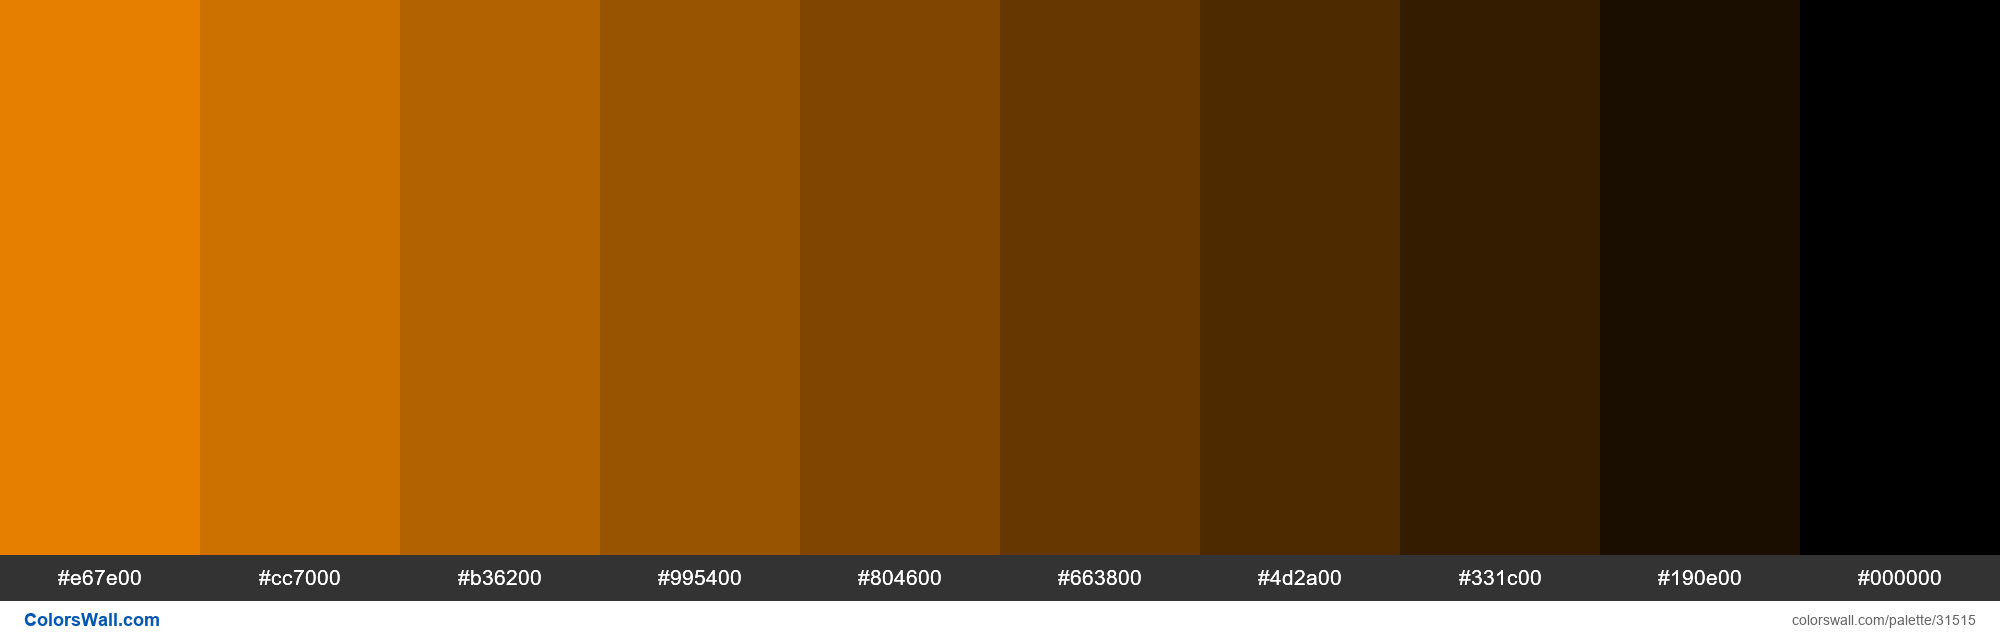 Shades X11 Color Dark Orange Ff8c00 Hex 31515 Colorswall 